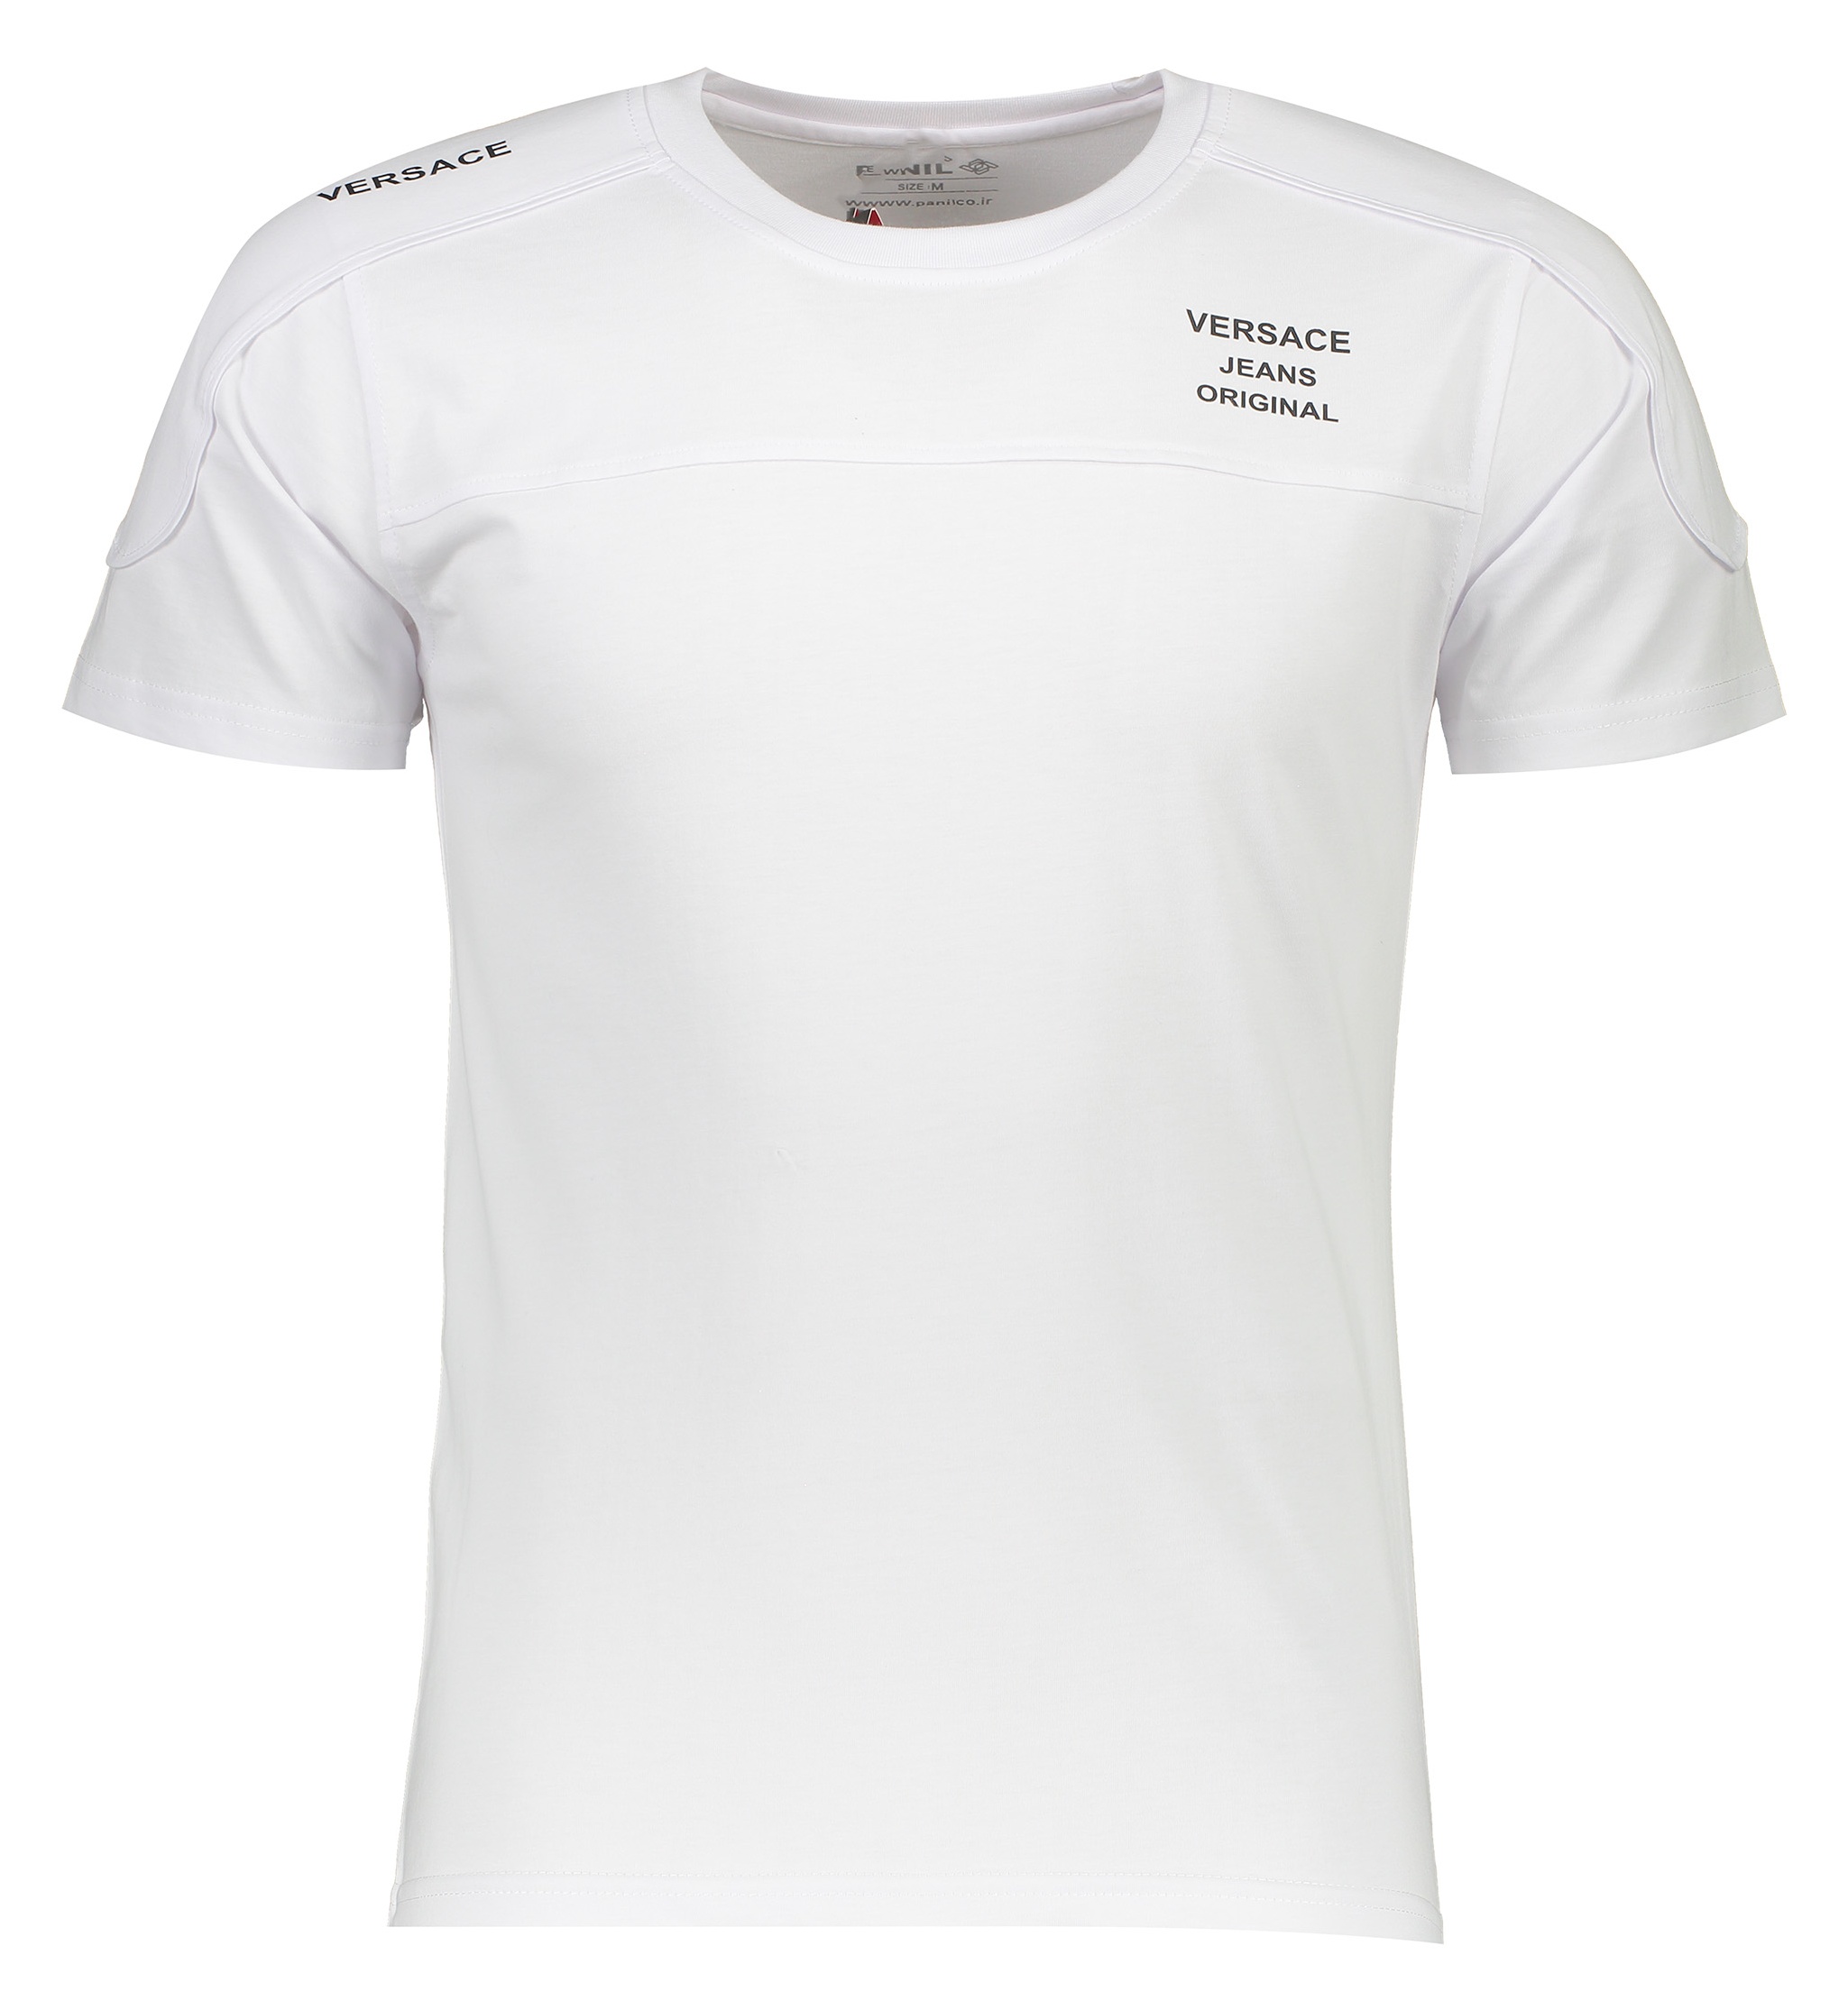 تی شرت ورزشی مردانه پانیل مدل PA111wh